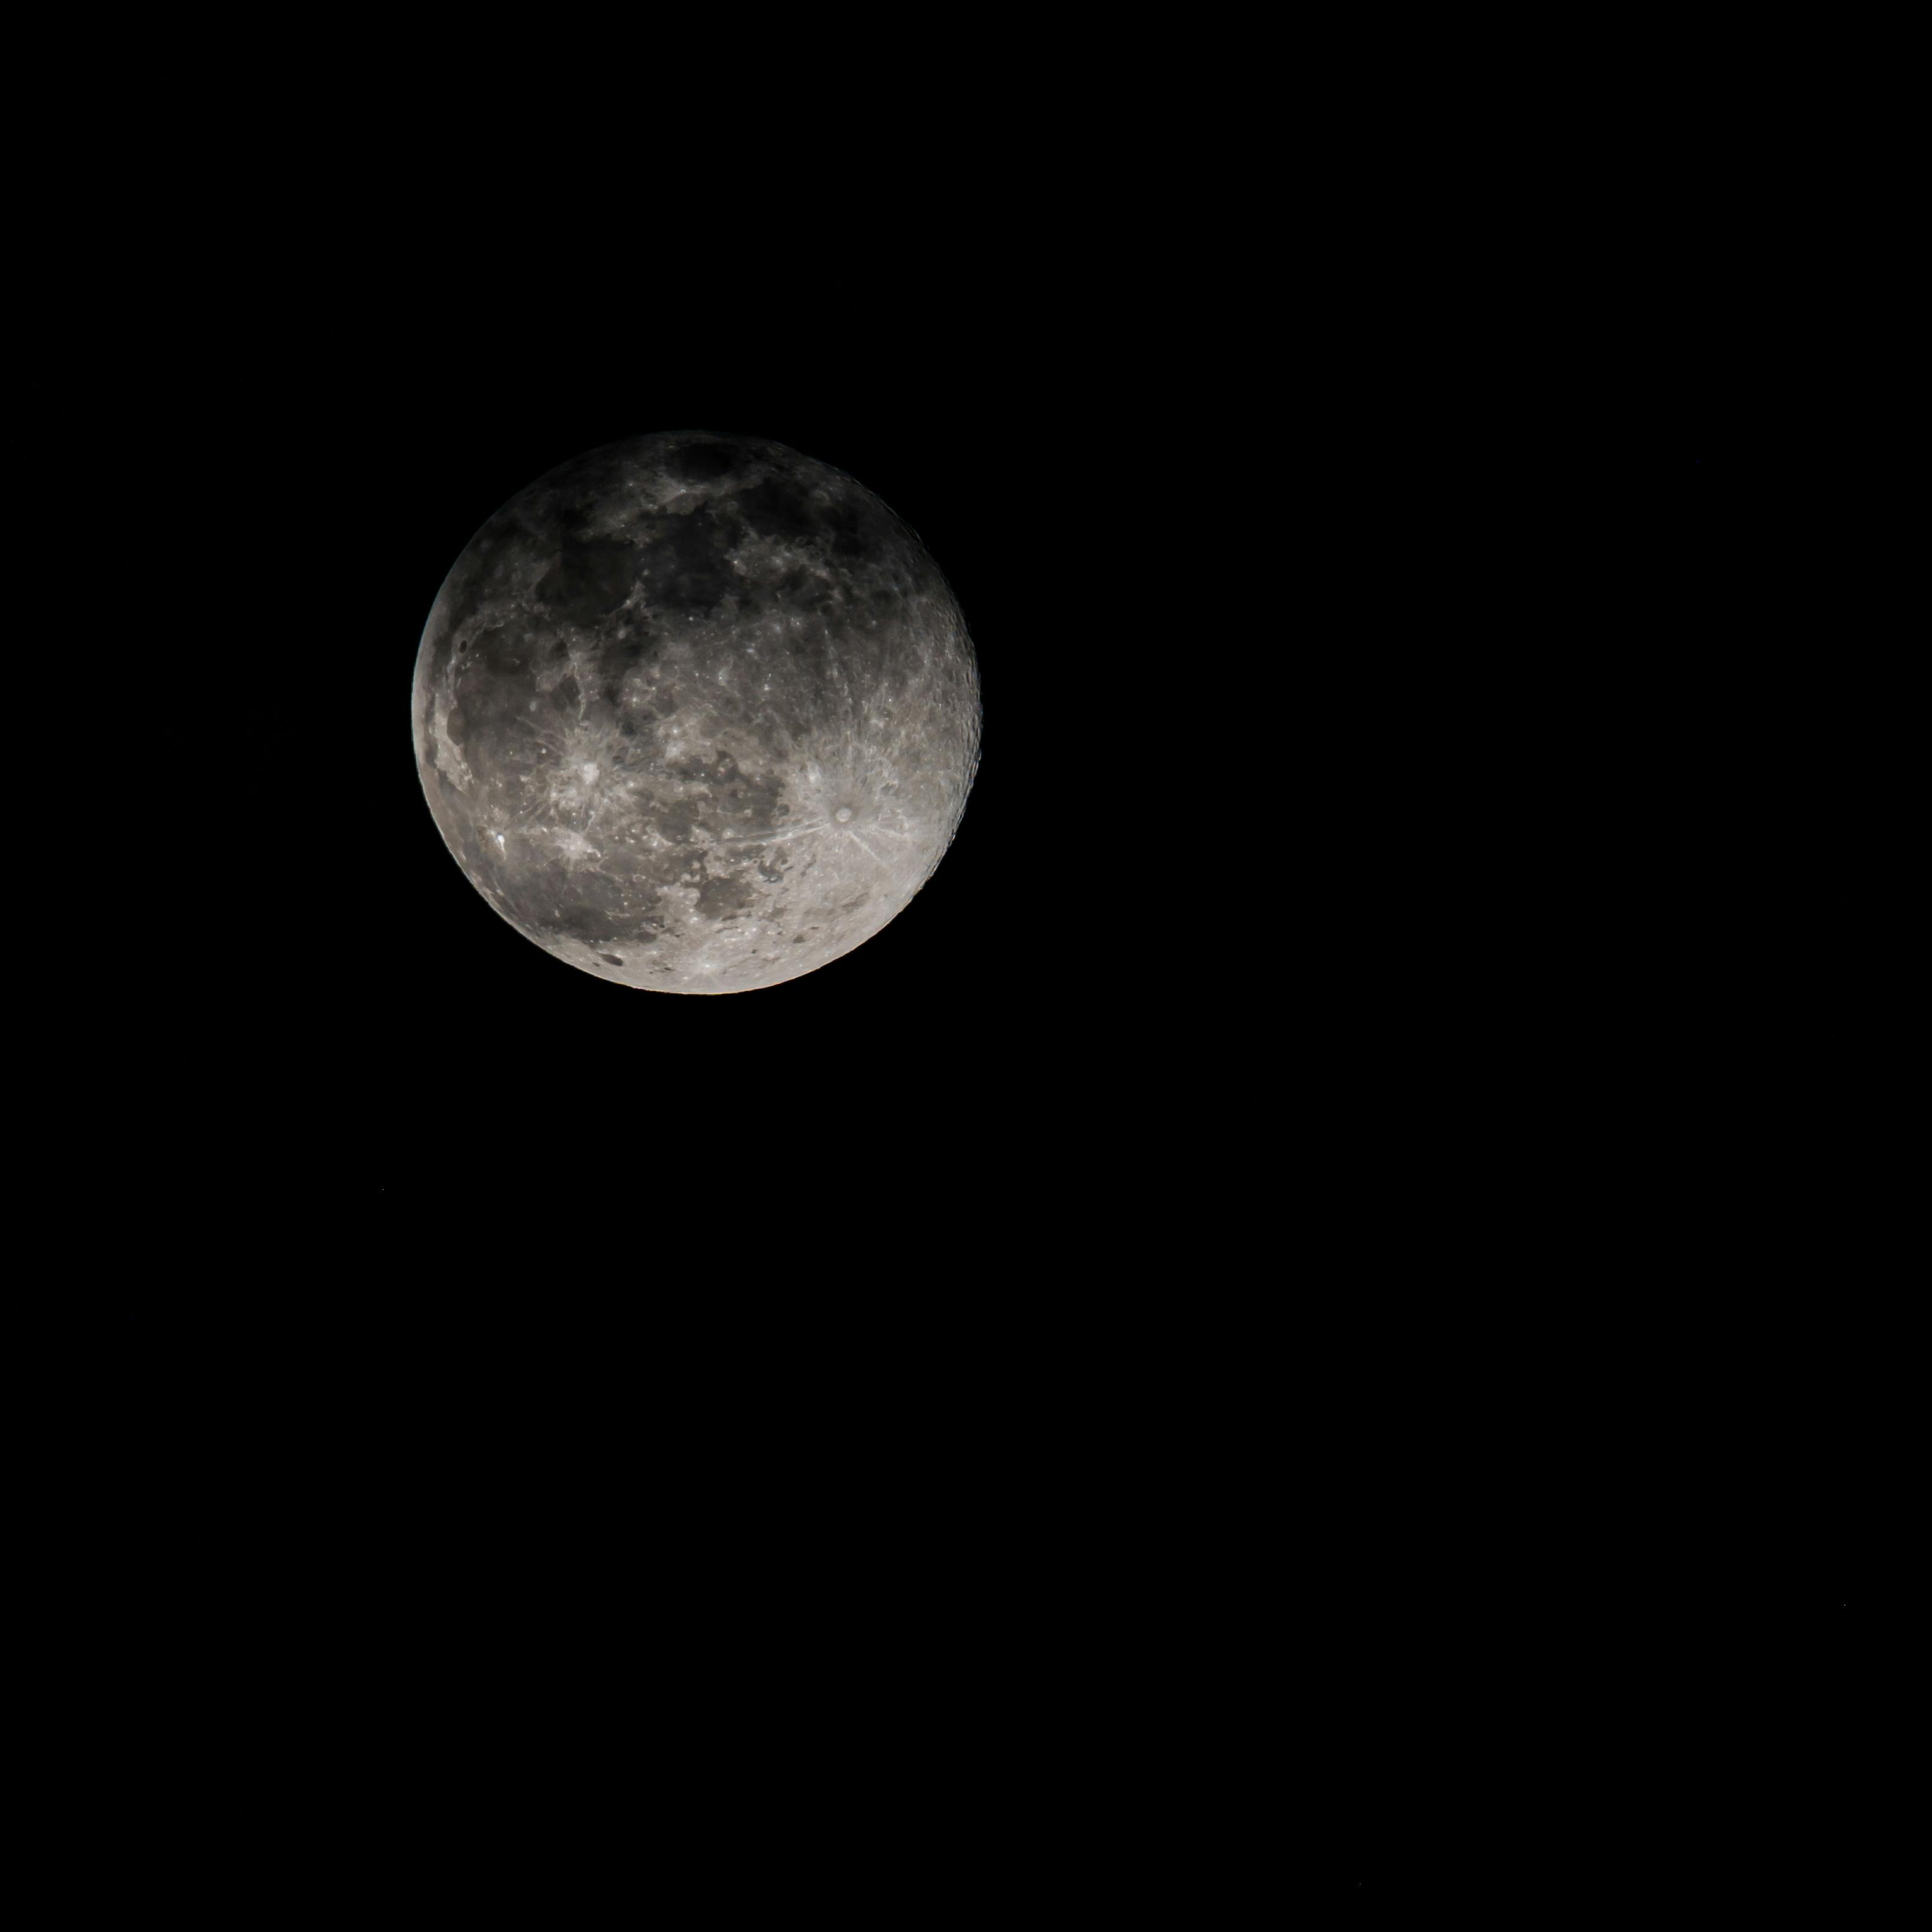 Đêm trăng tròn là khoảnh khắc đầy lãng mạn, cùng ngắm nhìn ánh sáng trăng lung linh chiếu sáng khắp cảnh vật. Hãy dành chút thời gian để đắm chìm trong không gian yên bình cùng hình ảnh đầy màu sắc về đêm trăng tròn.